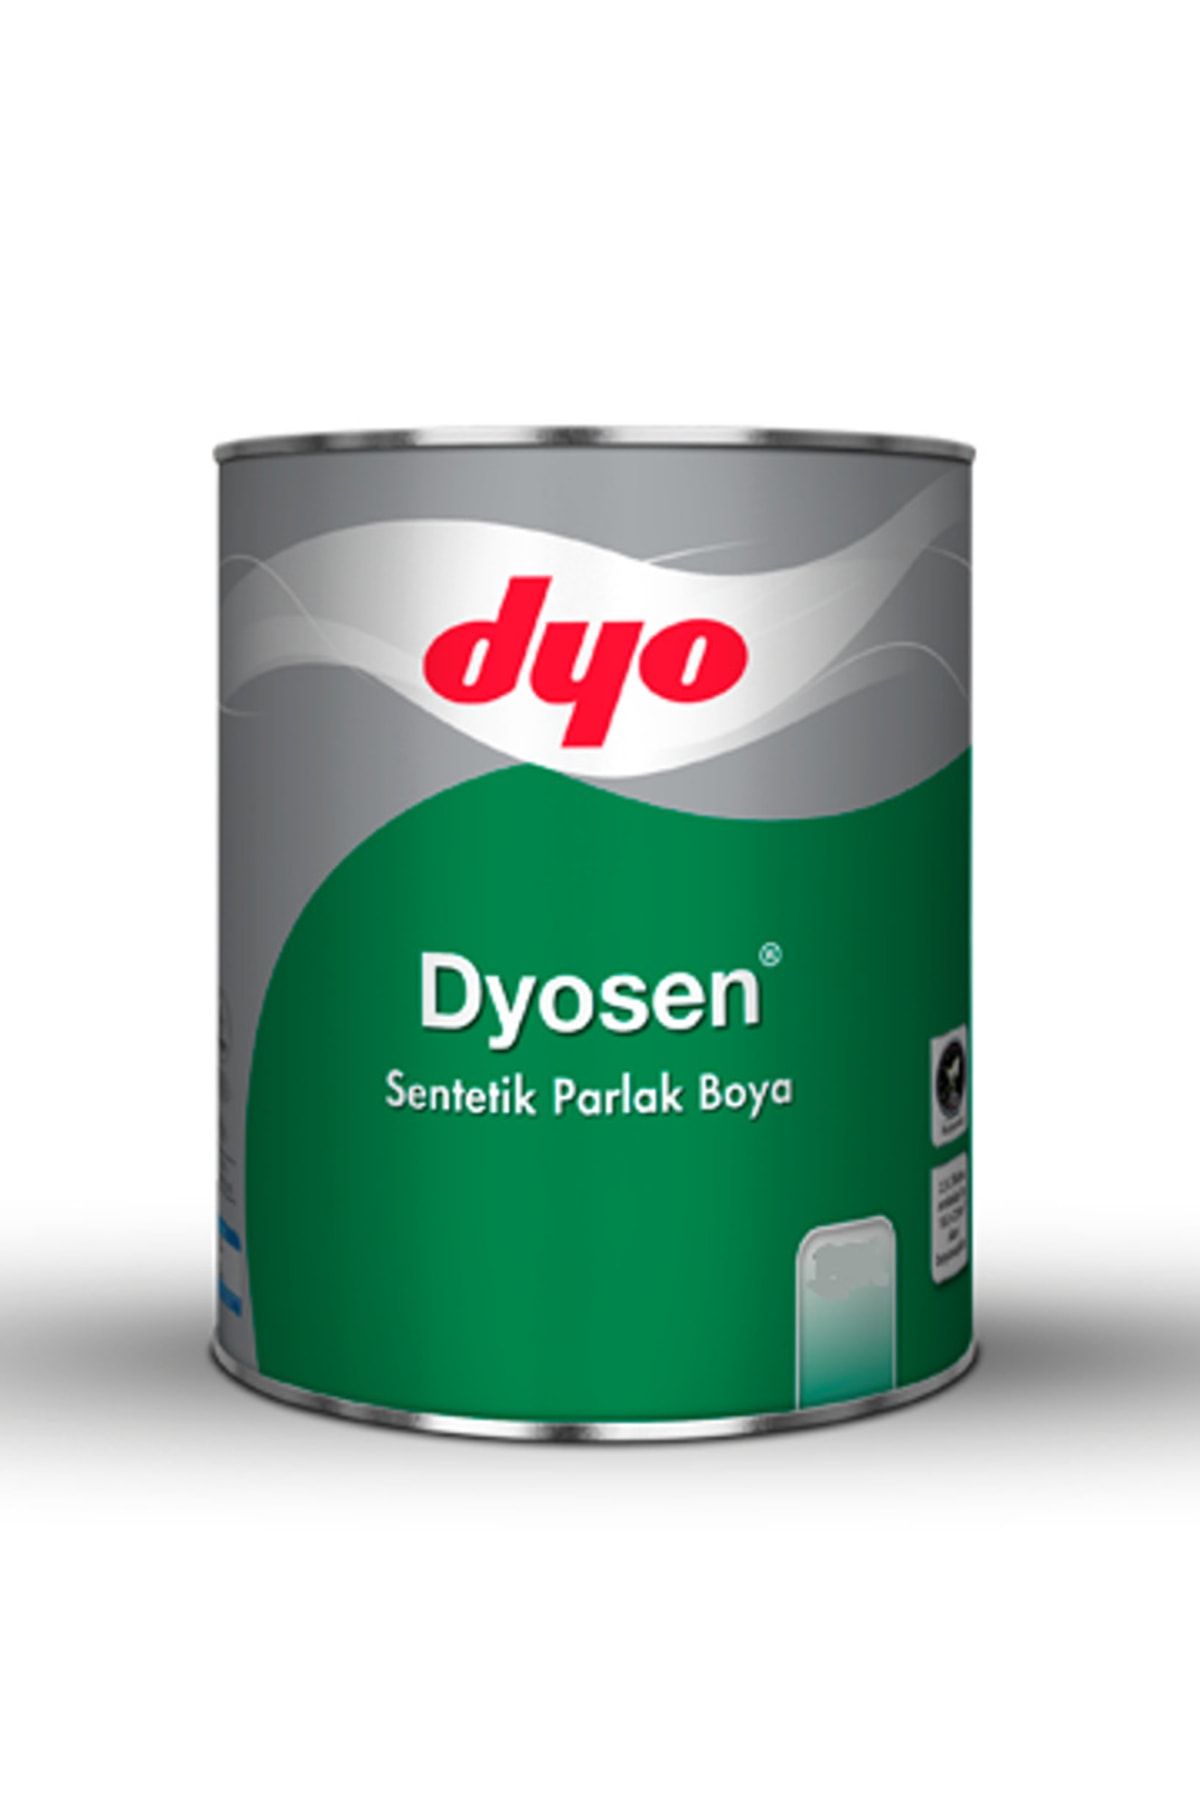 Dyo Dyosen Sentetik Parlak Boya 0,75 litre (Portakali)